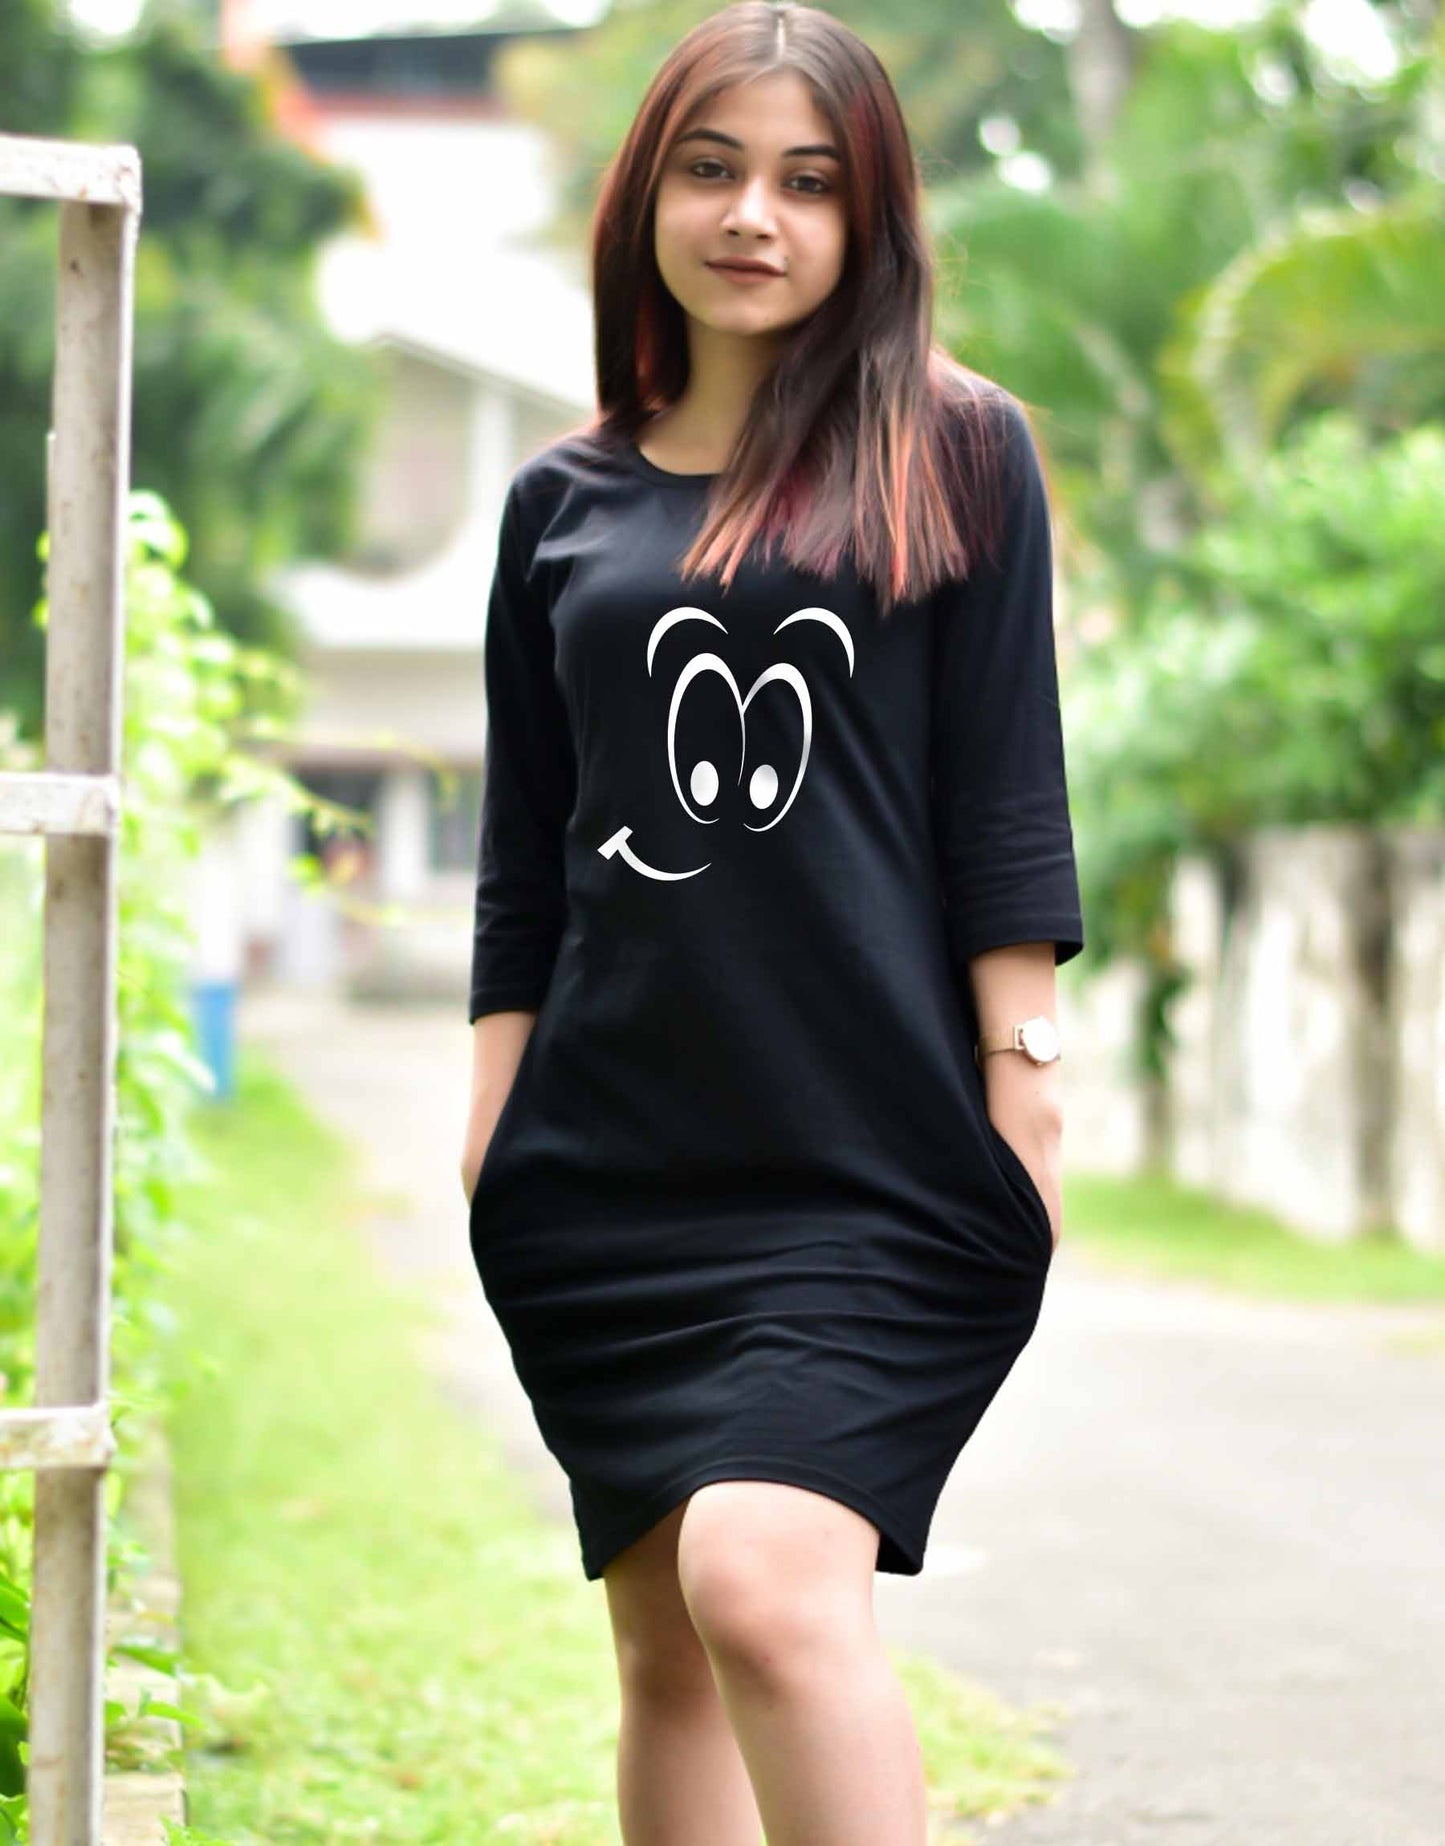 T Shirt Dress For Women with Funny Face Print - 699.00 - TEEGURUJI - Free Shipping